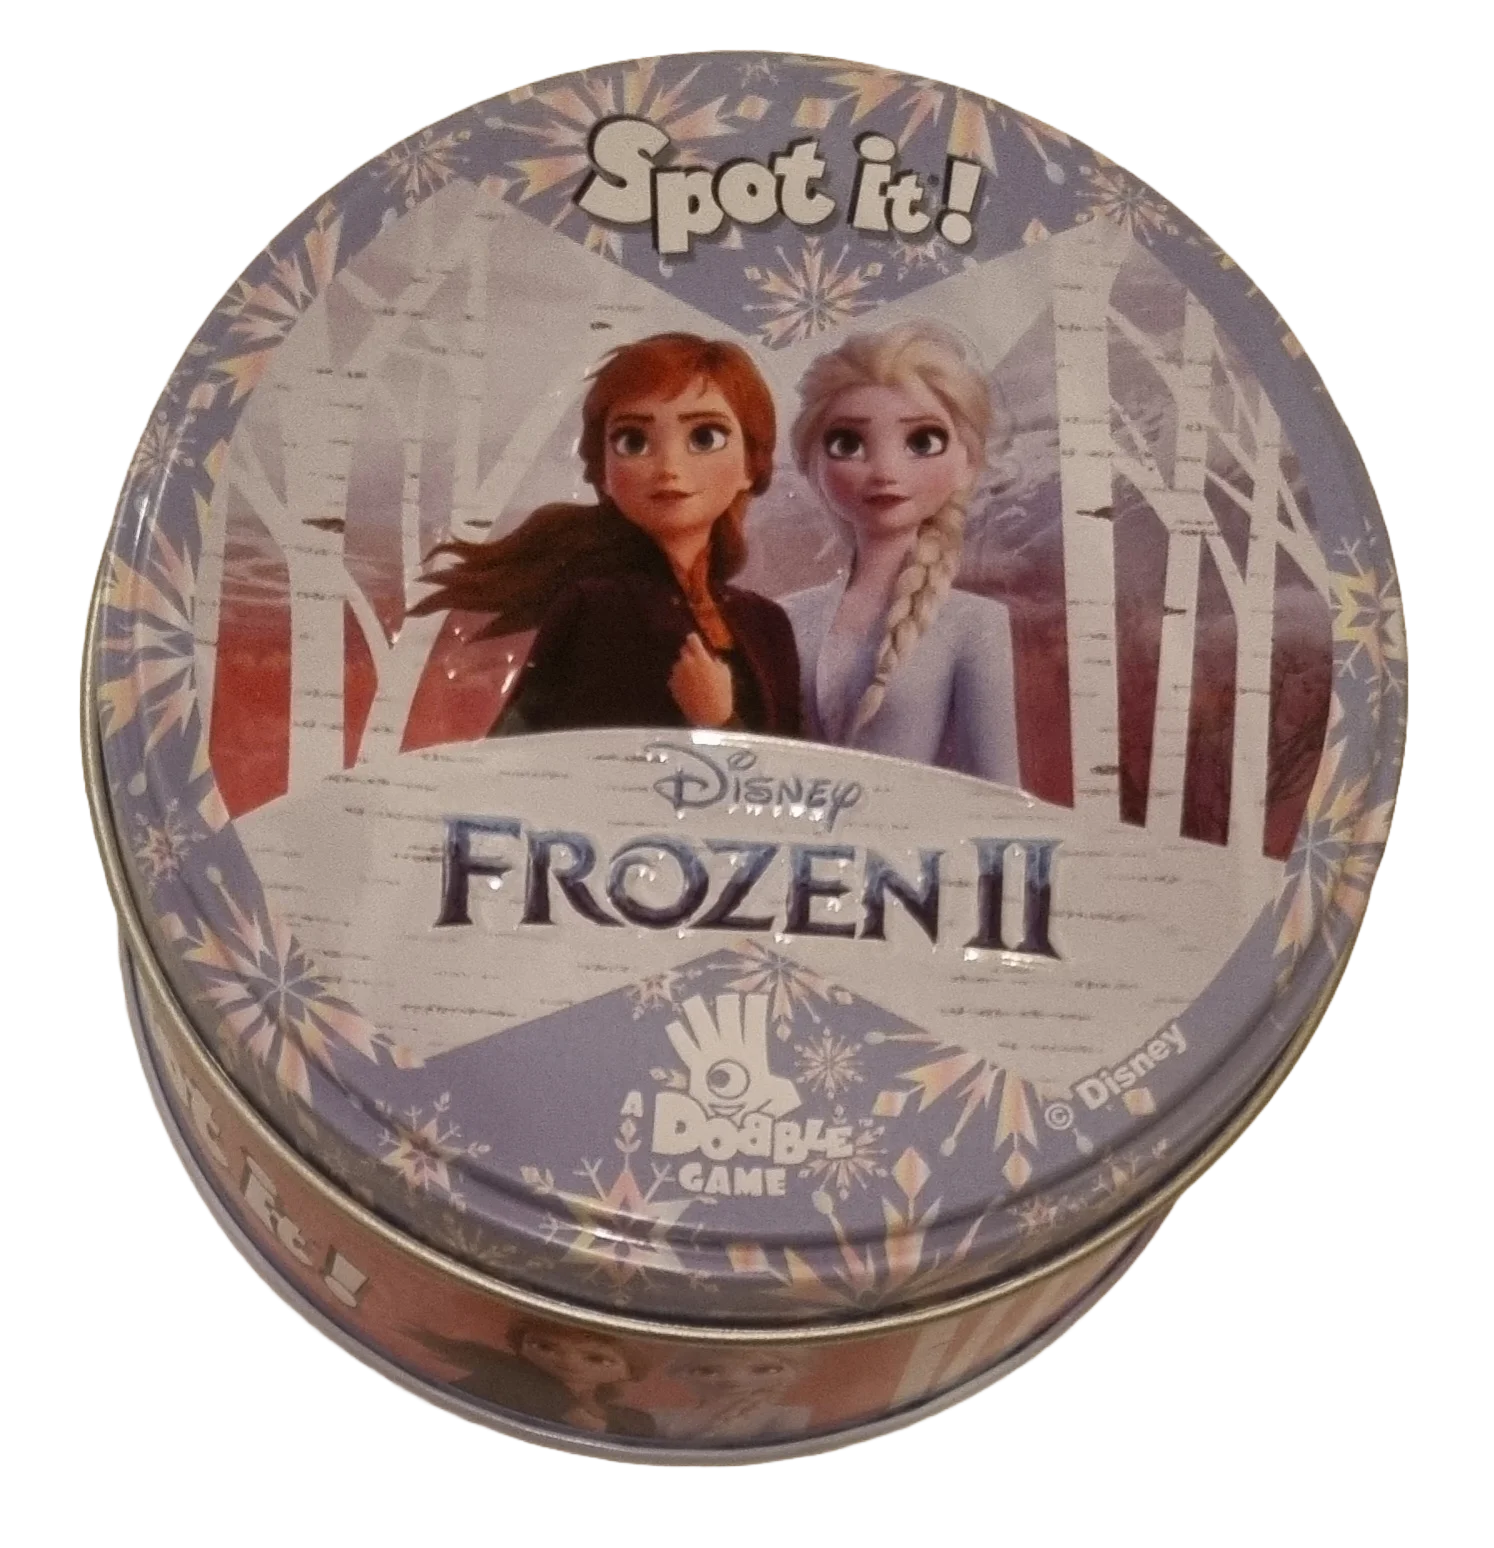 Spot it Disney Frozen 2